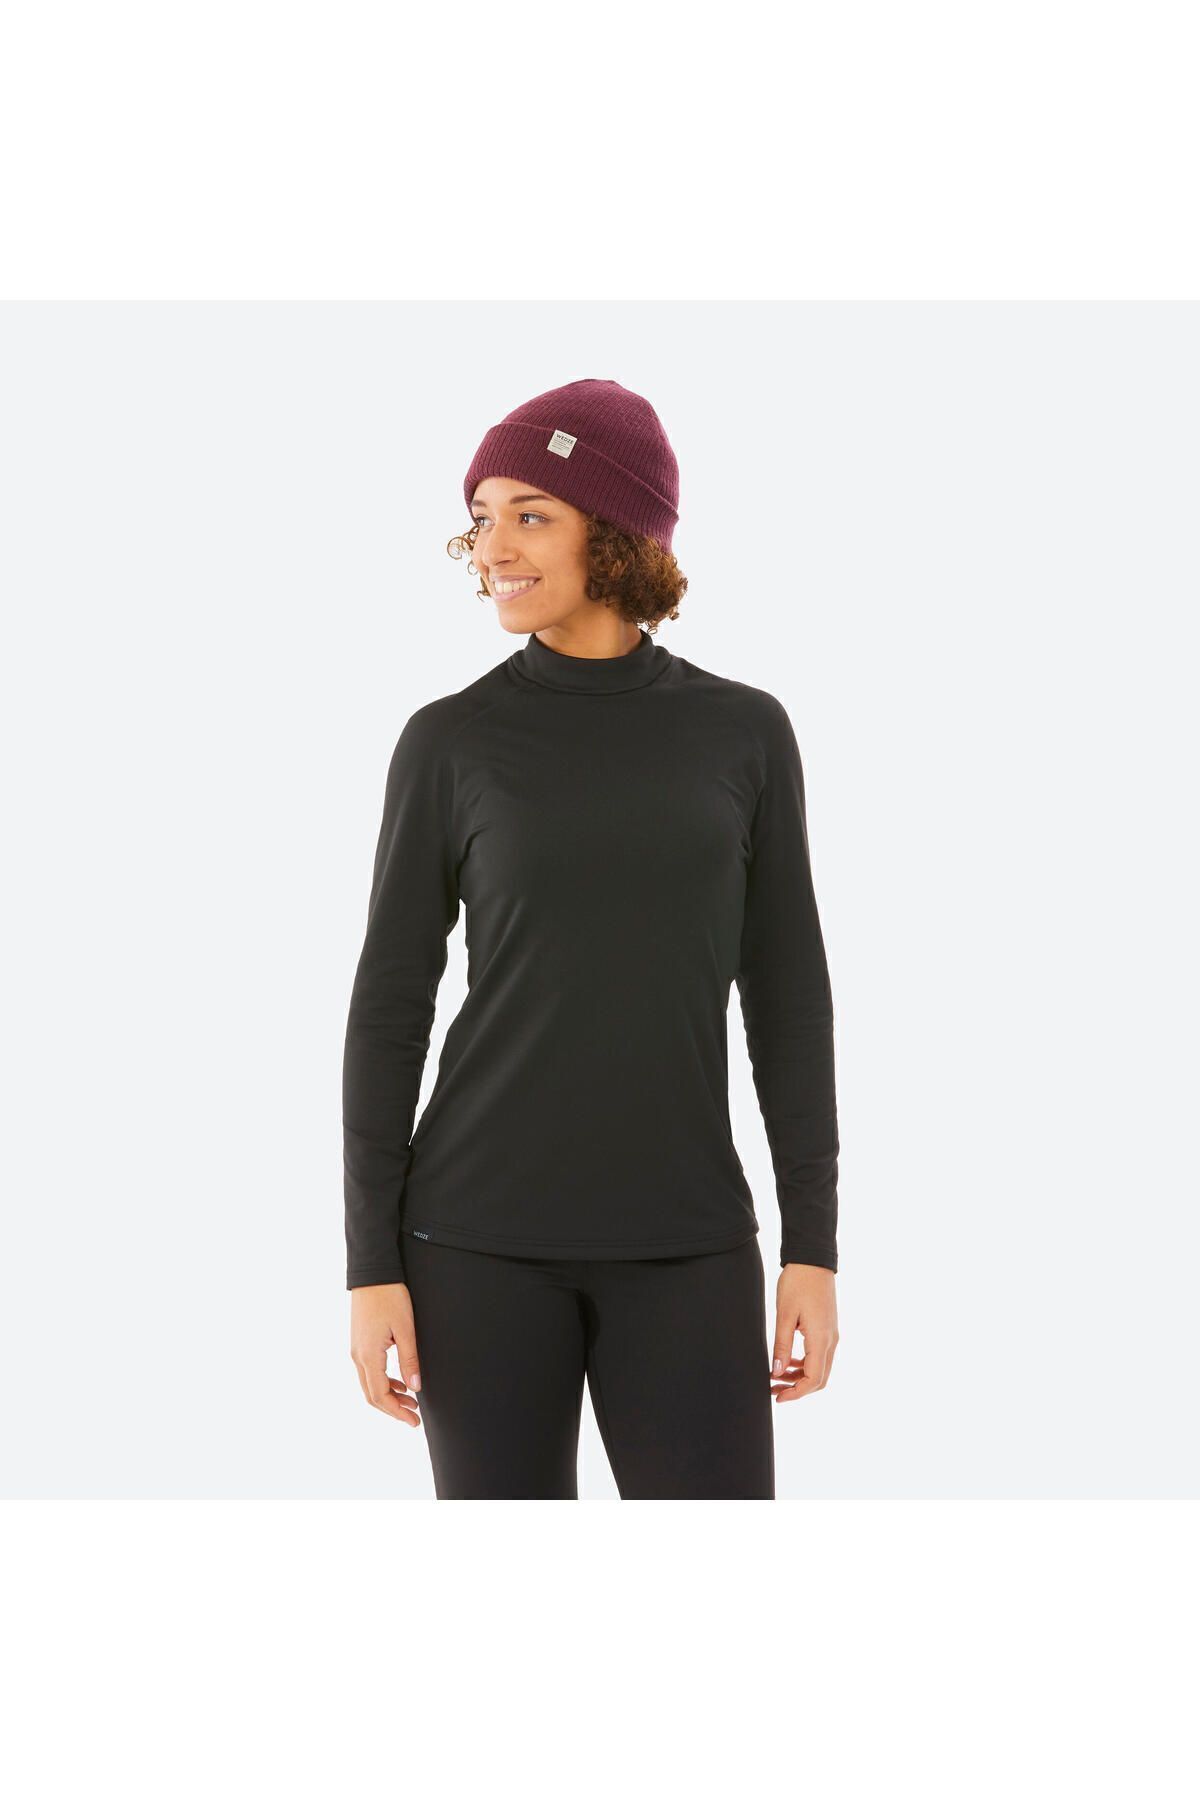 Decathlon Kadın Üst Kayak İçliği - Siyah - BL 500 TYCEU86EXN170181652382840